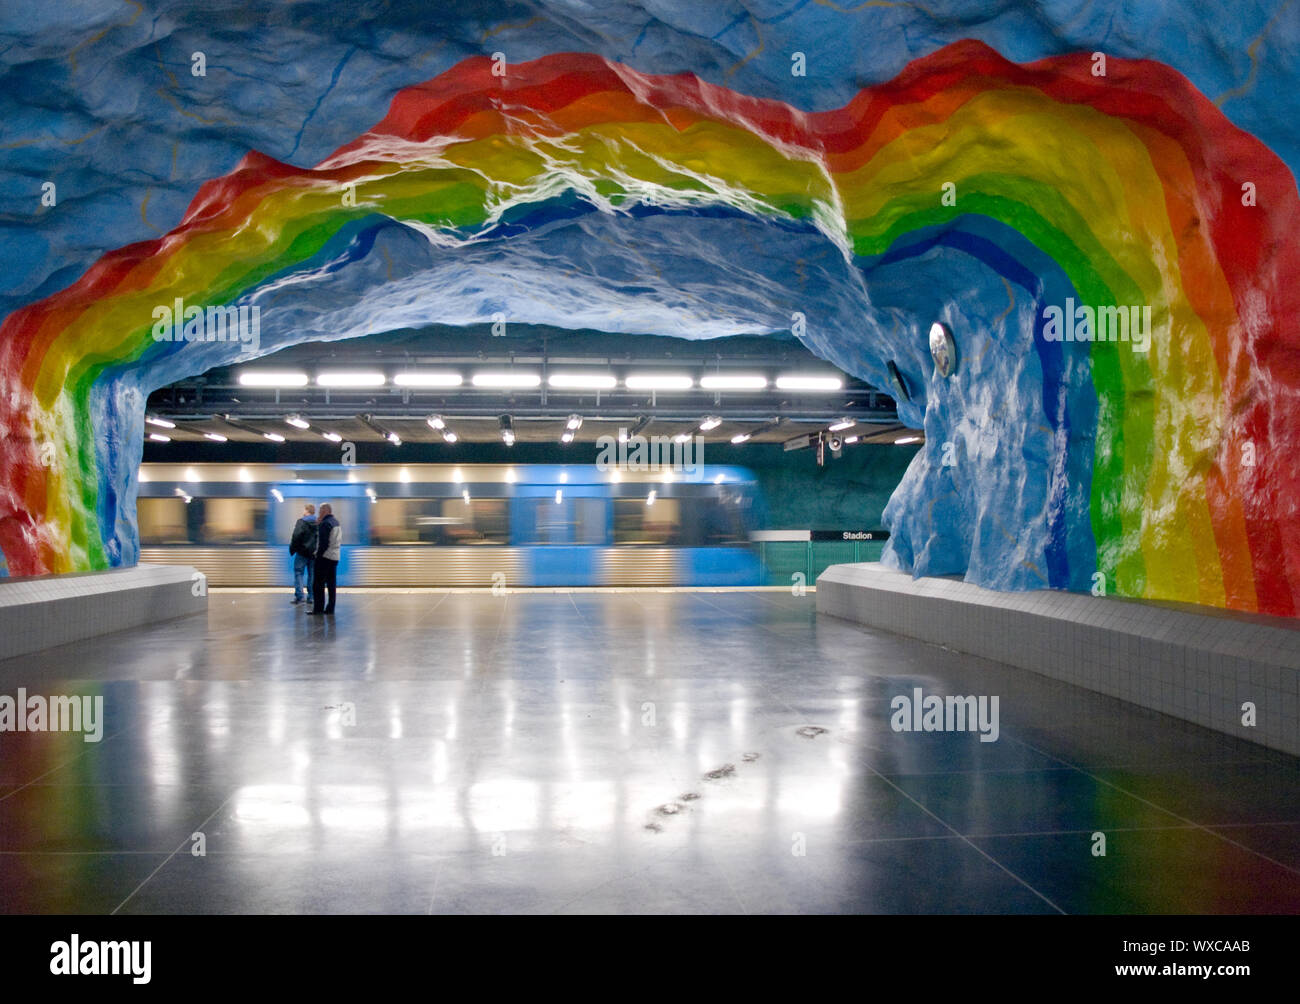 Der Regenbogen Kunst Des Stadion Station Auf Der Stockholmer U Bahn Stockholmer Tunnelbana System Stockholm Schweden Stockfotografie Alamy